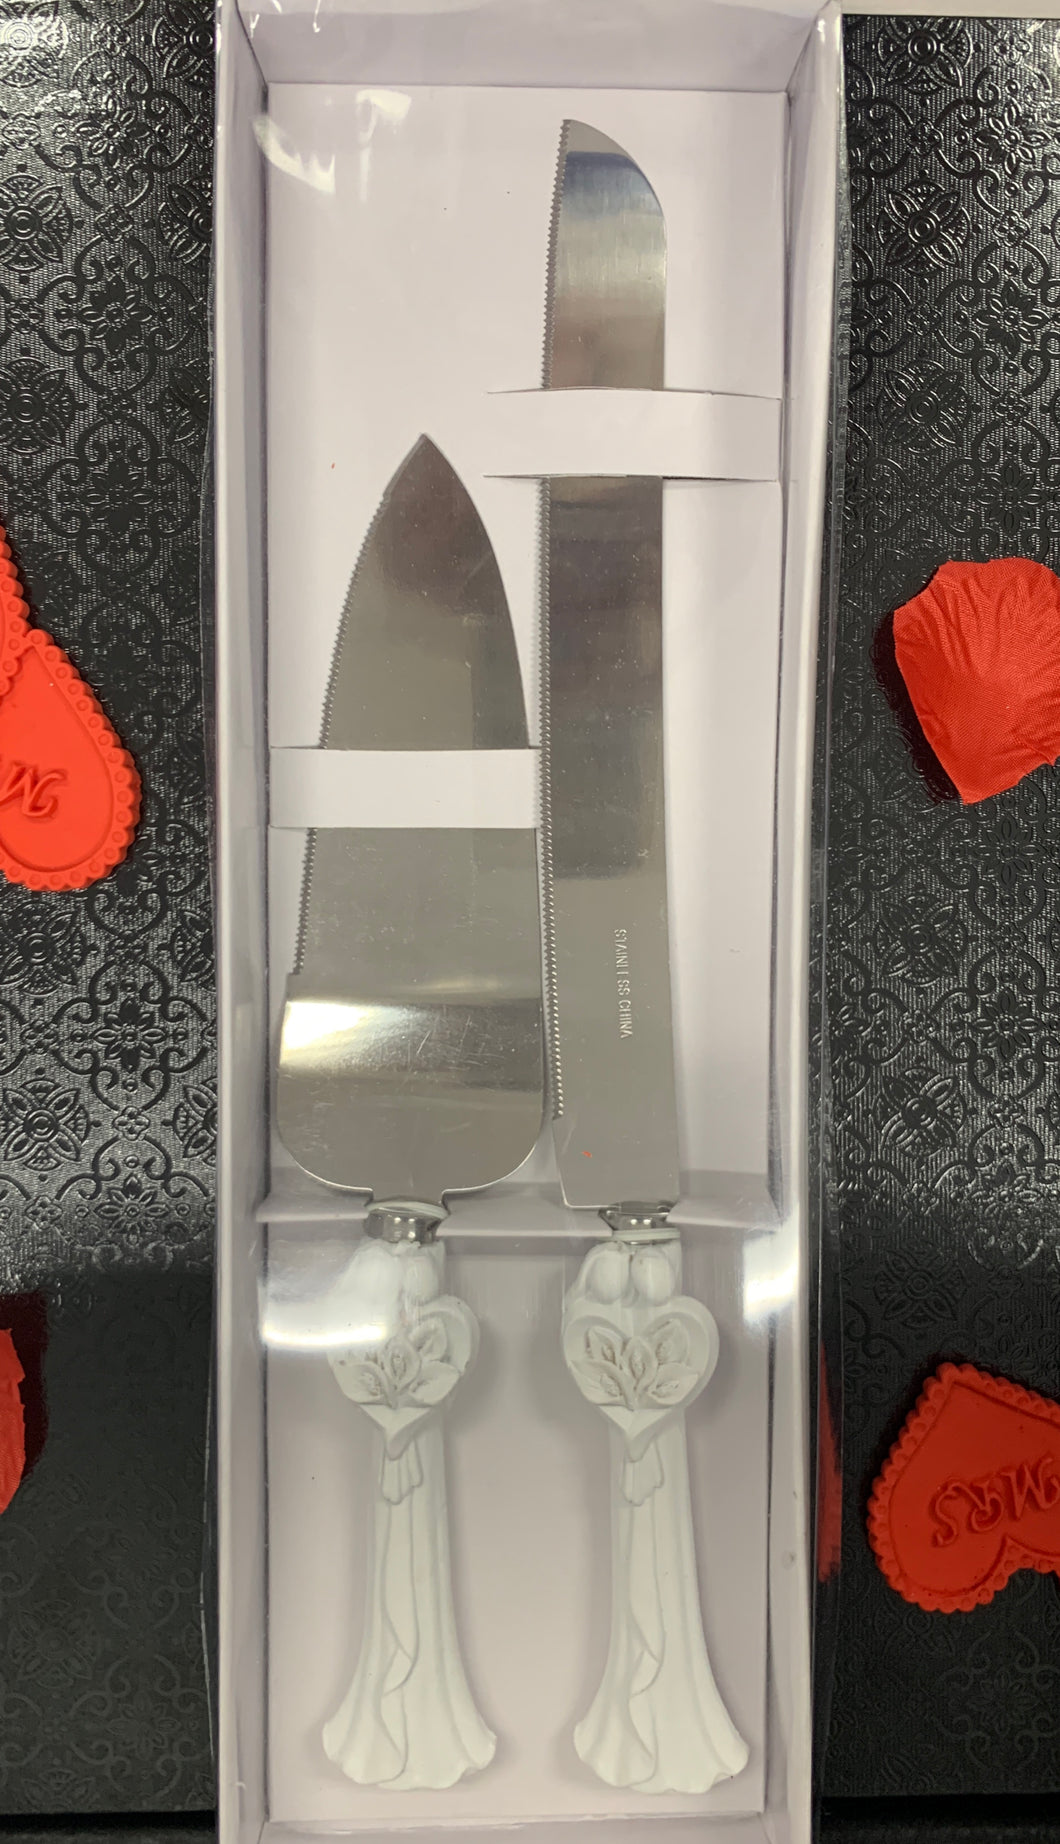 Knife - White $6.95